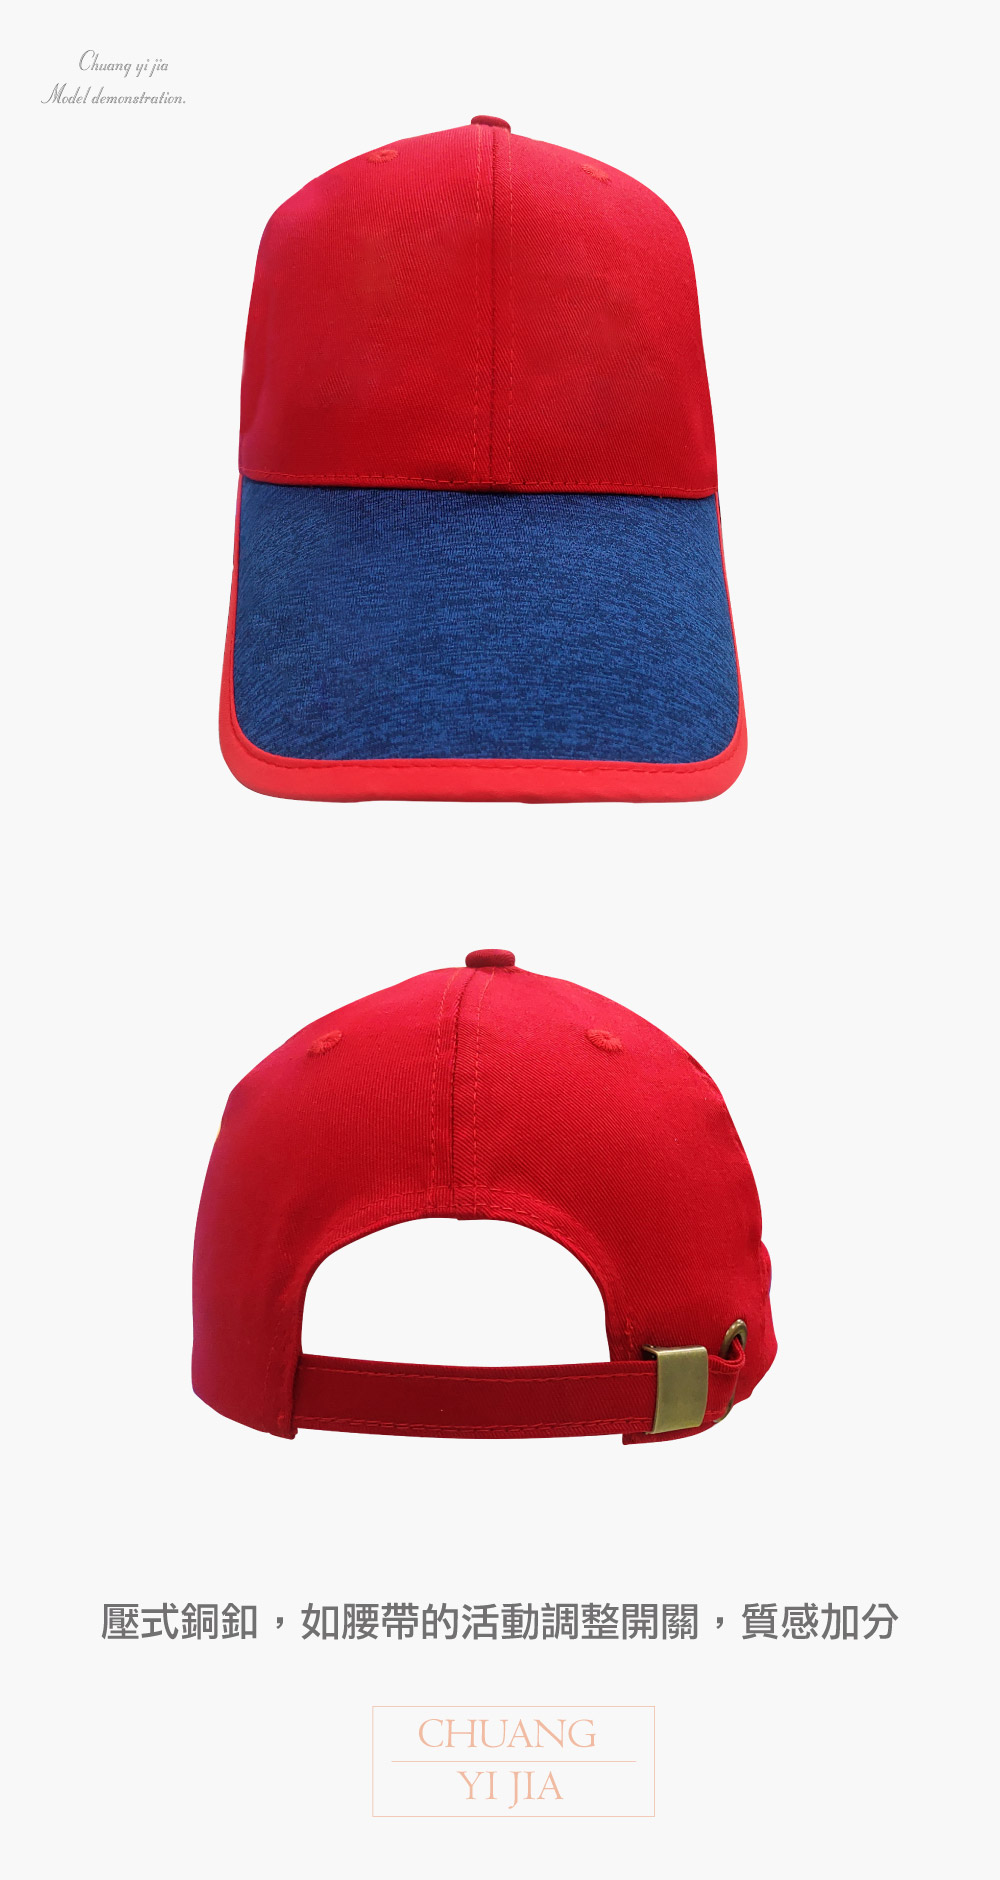 創意家團體服-六片帽 棉斜紋-拚色訂製款-紅配雪花丈青